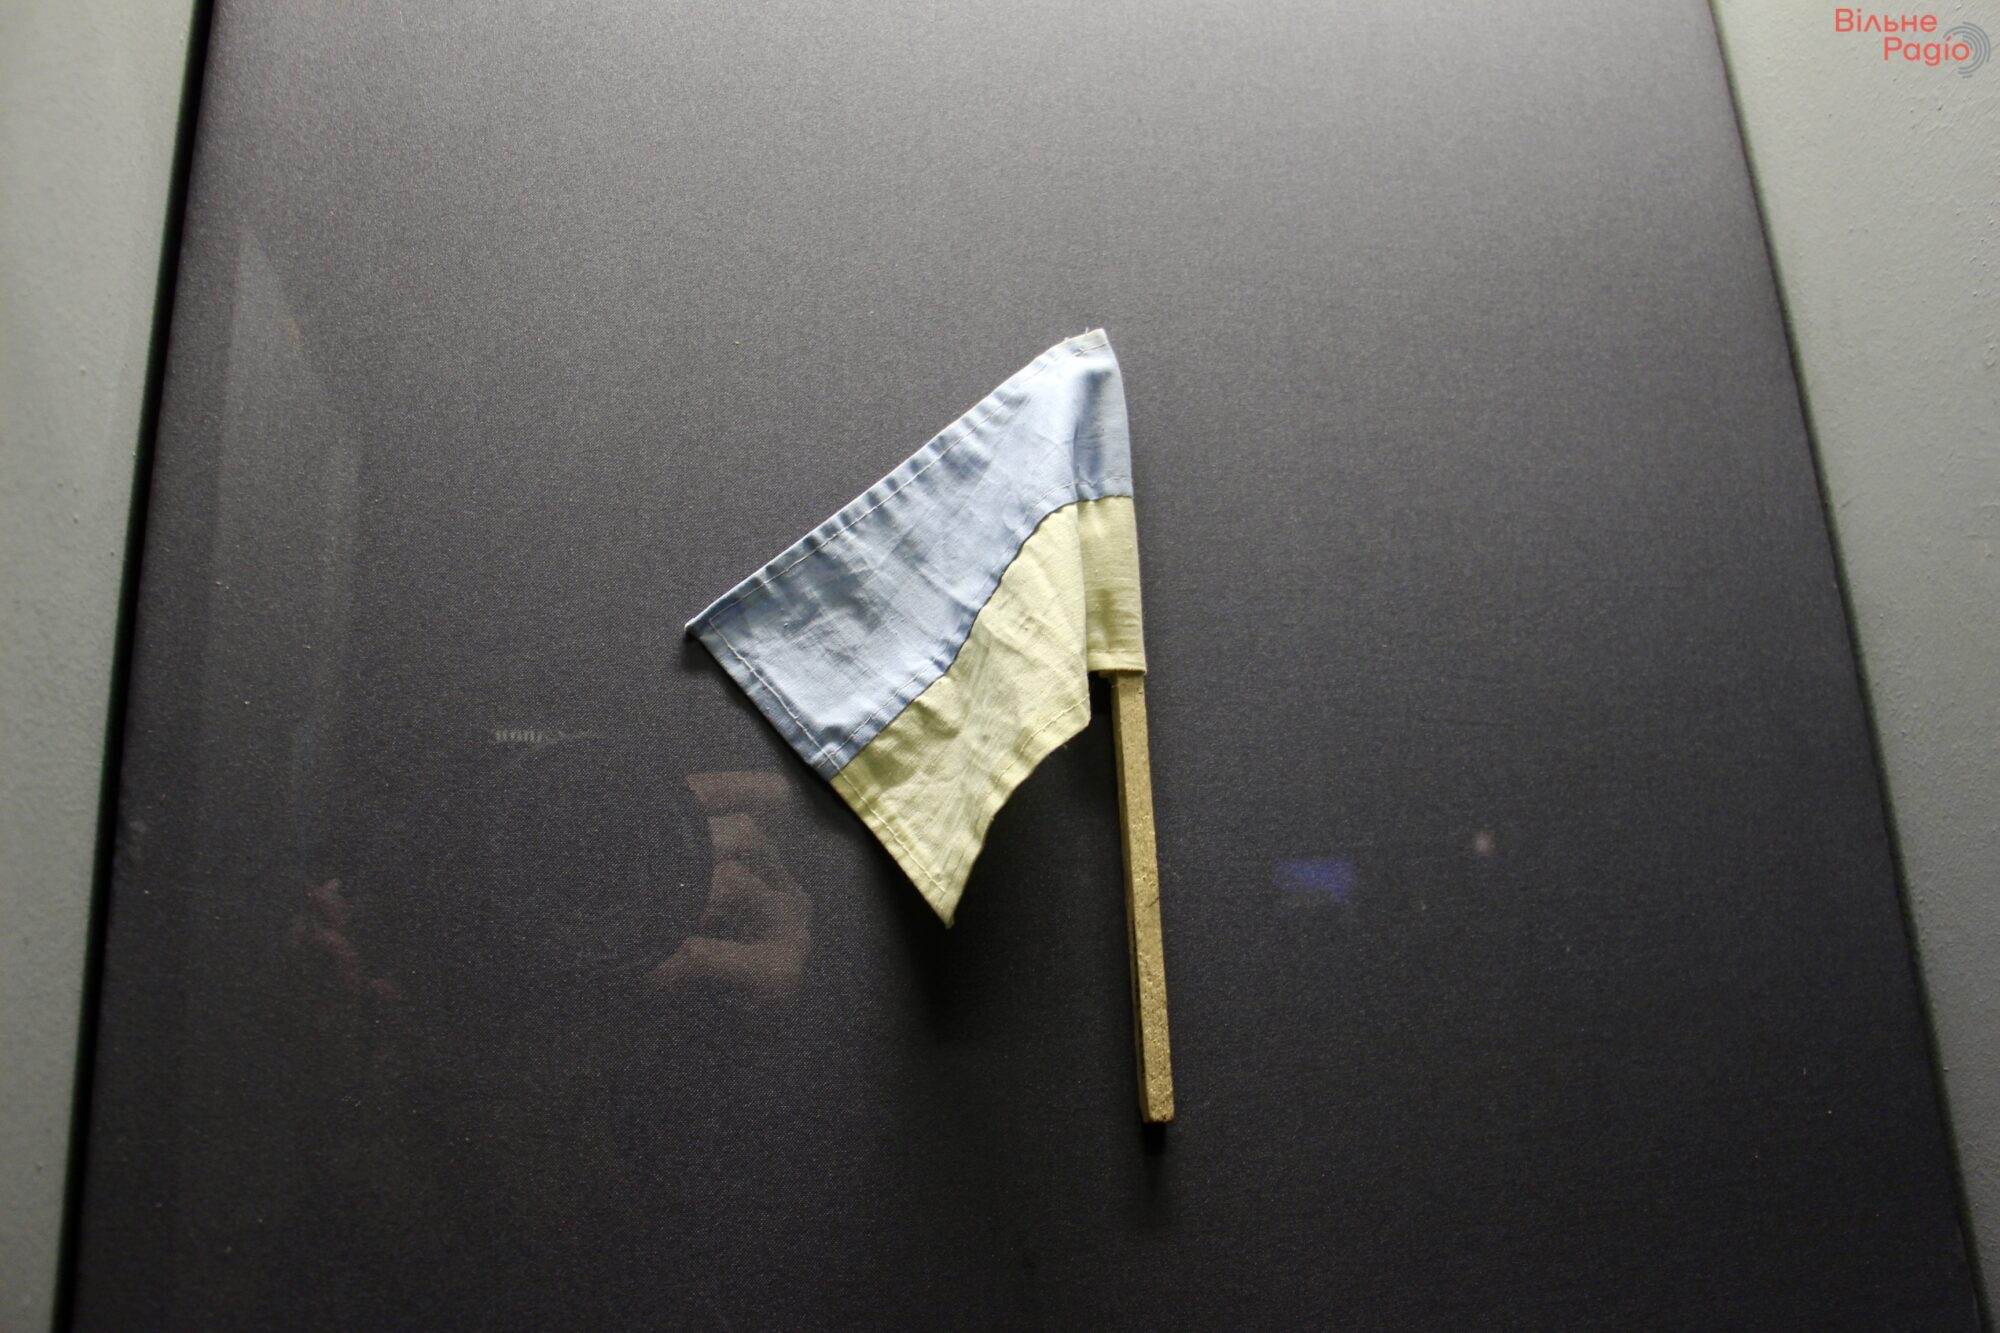 “Флаги Независимости”: фотоподборка государственных флагов, которые навсегда останутся частью украинской истории 9